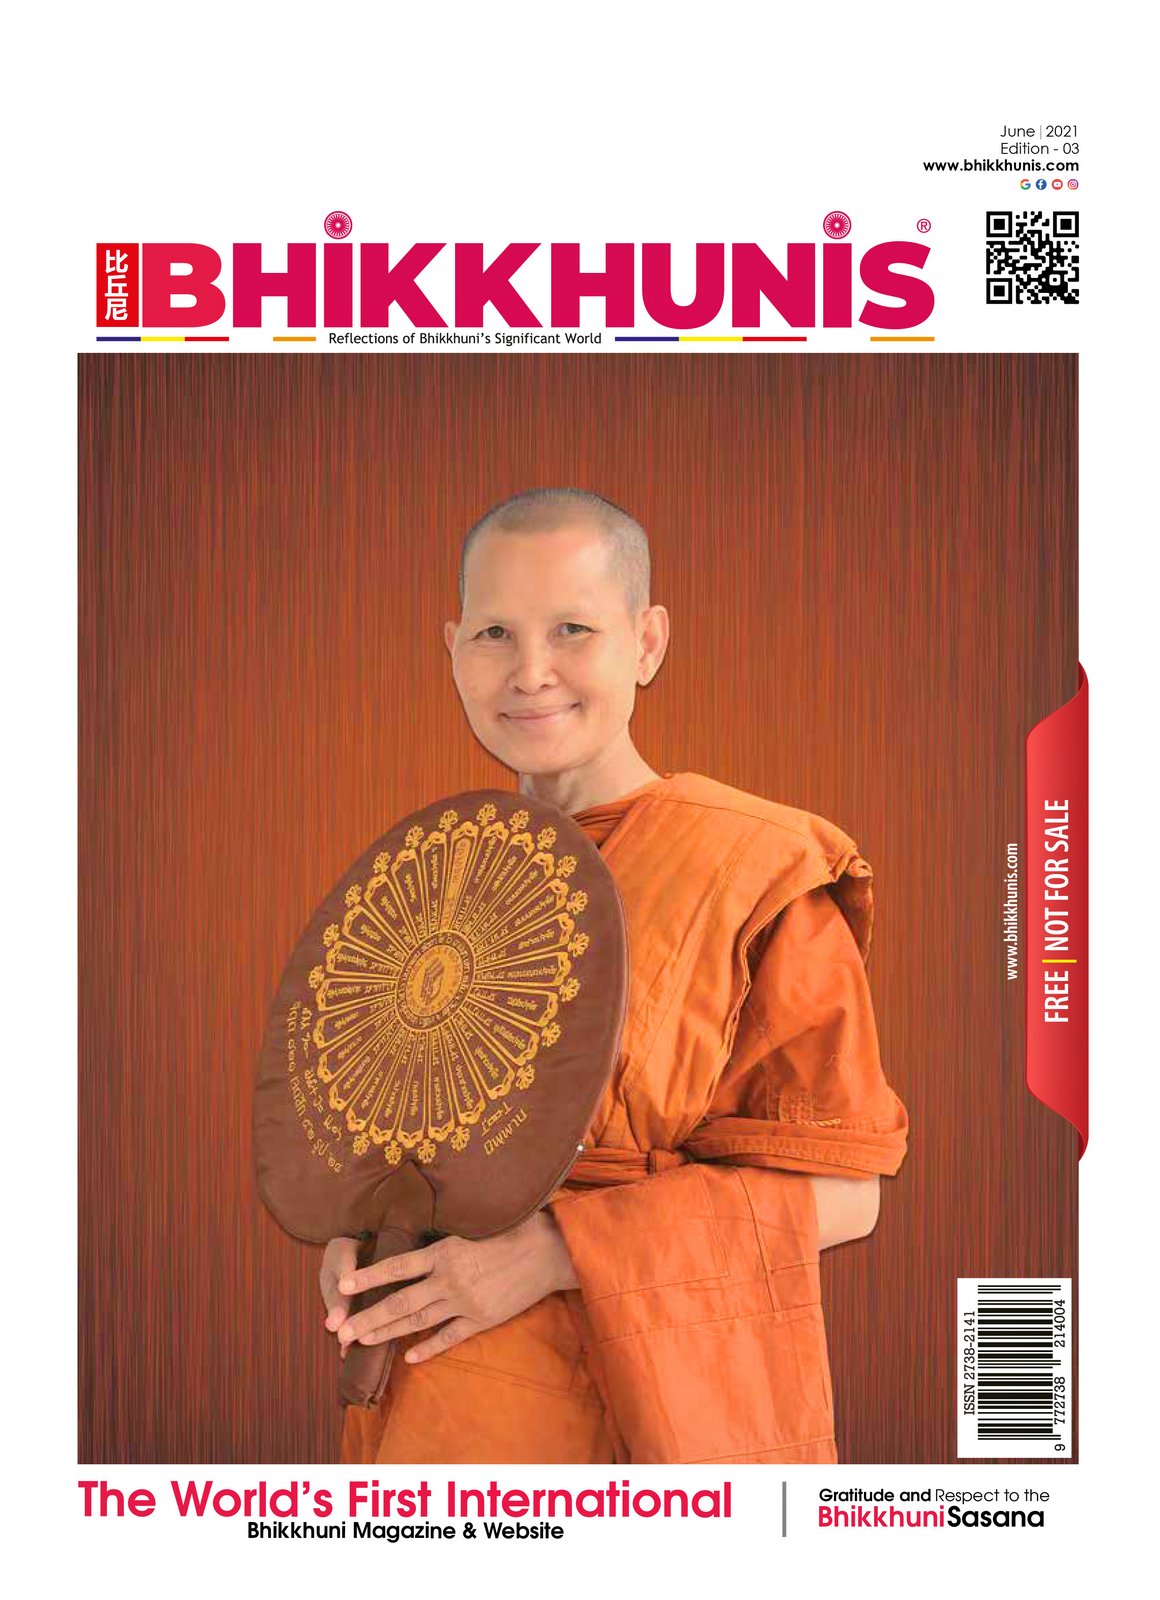 #Bhikkhunis_International_Buddhist_Magazine_June_2021_Main_Page